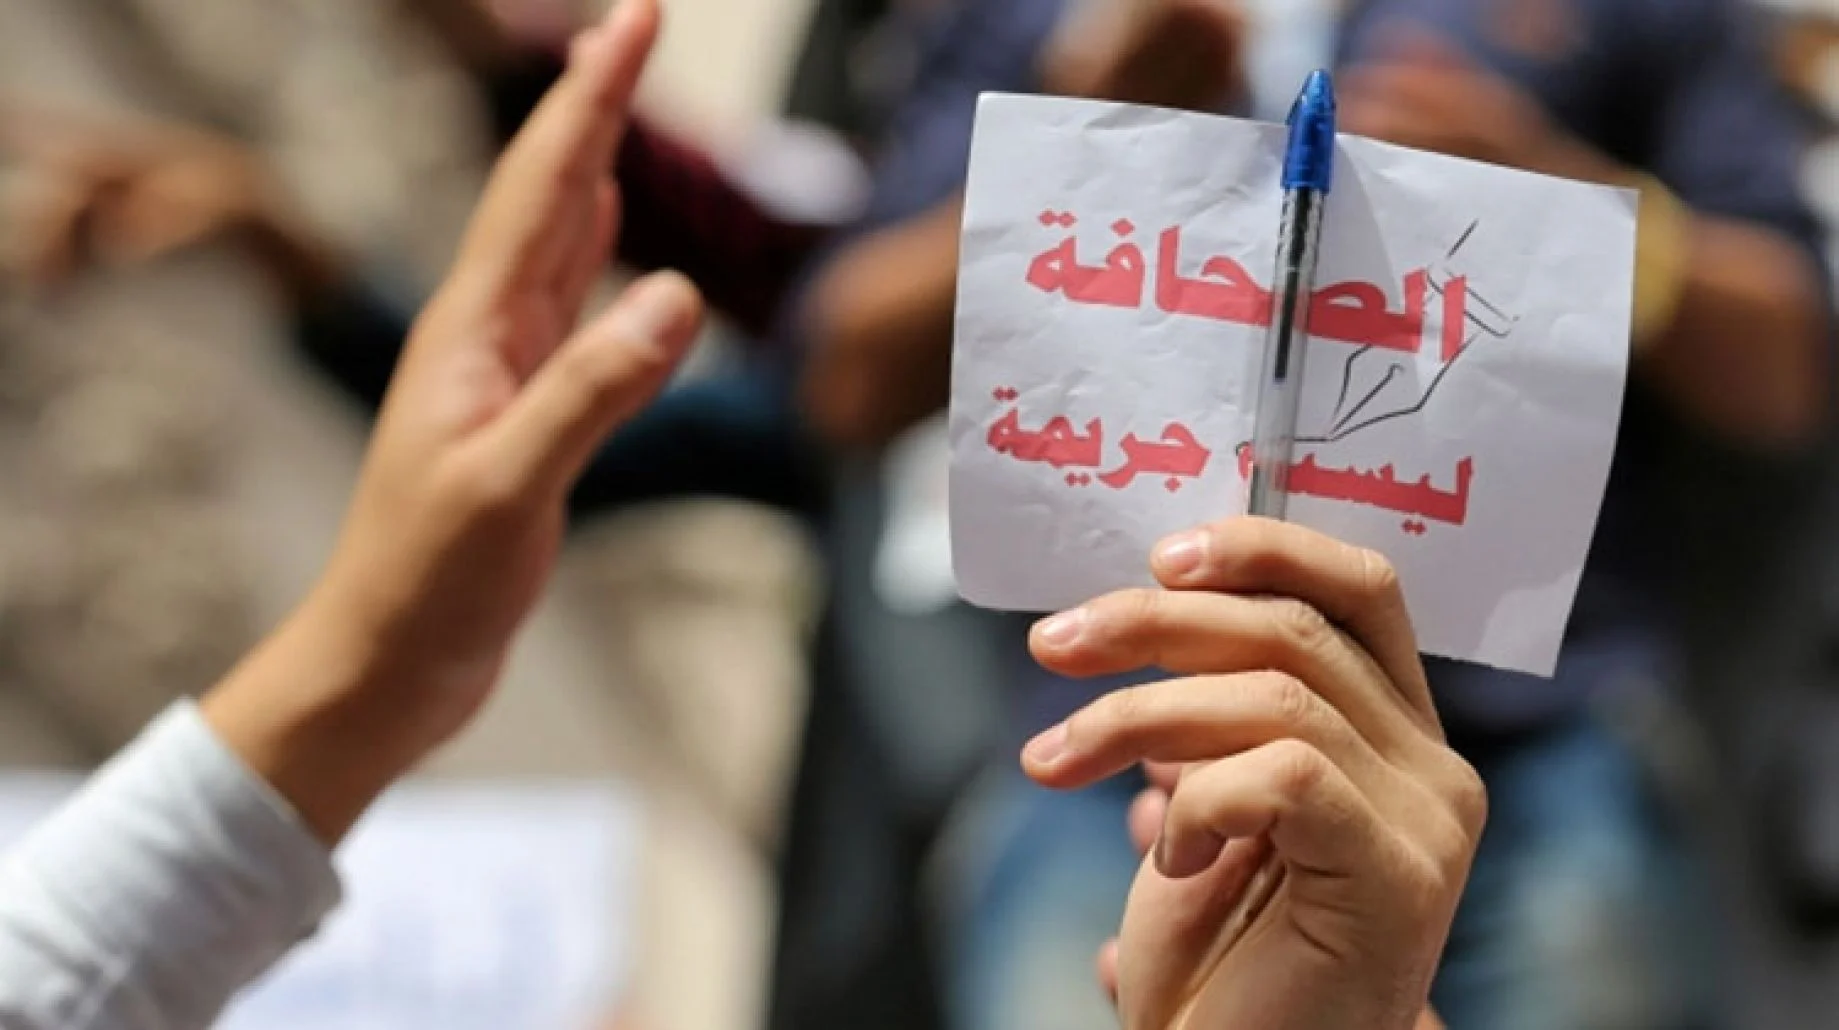 حرية الصحافة بالعالم العربي في يومها العالمي - الحدث بريس